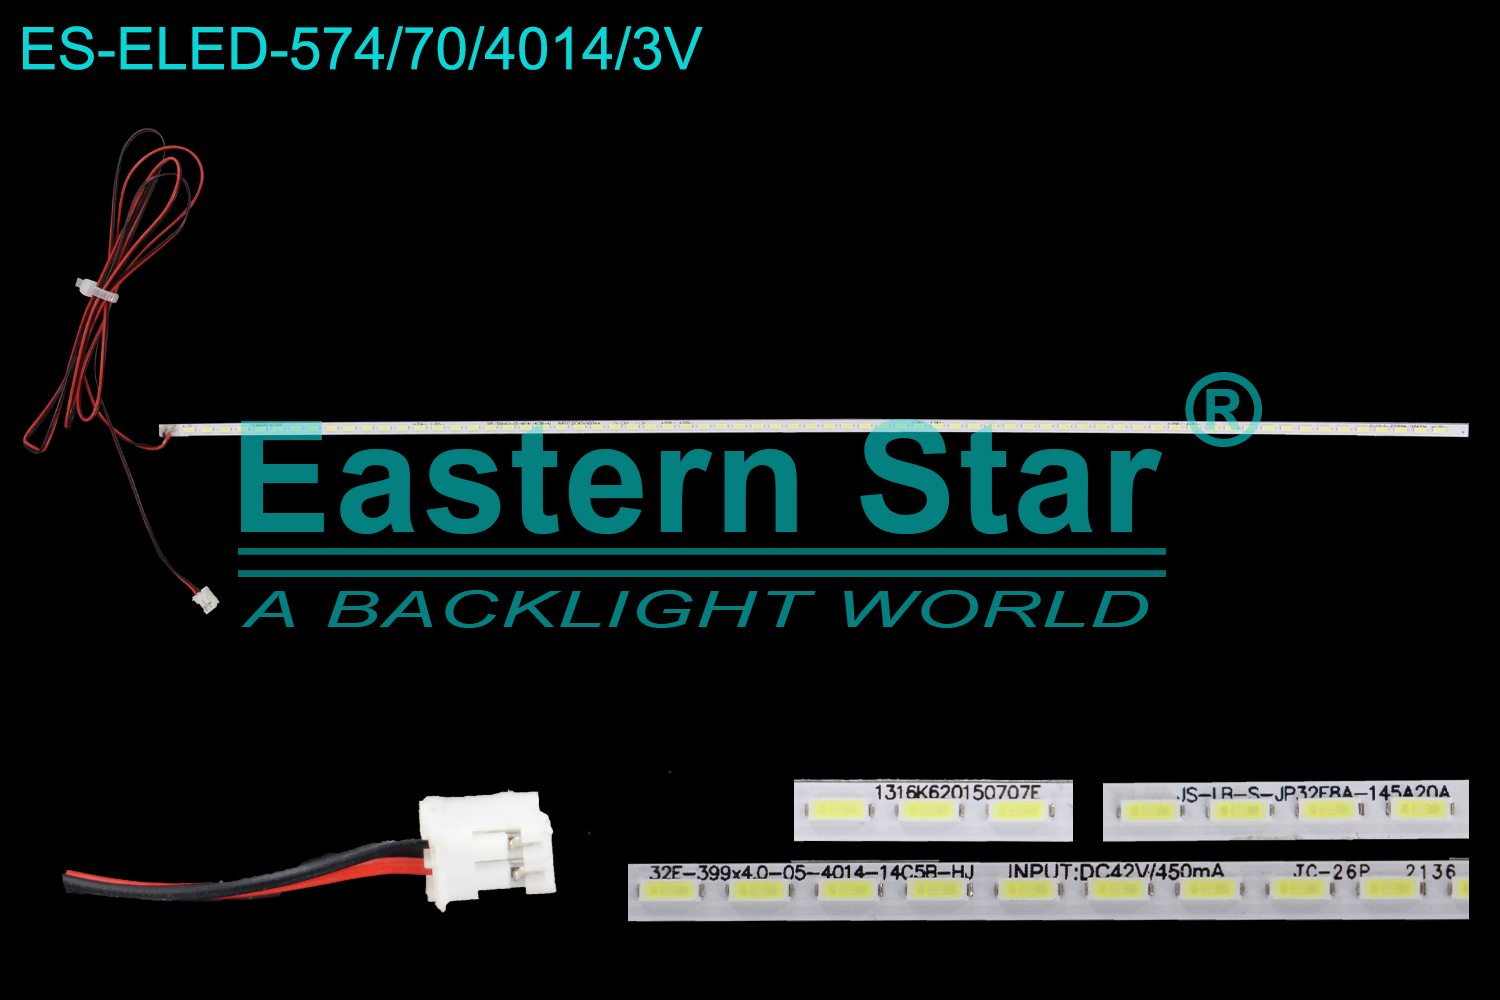 ES-ELED-574 ELED/EDGE TV backlight use for 32'' 1316K620150707E  32E-399*4.0-05-4014-14C5B-HJ  INPUT:DC42V/450mA  JC-26P  2136   JS-IR-S-JP32E8A-145A20A LED STRIPS(1)